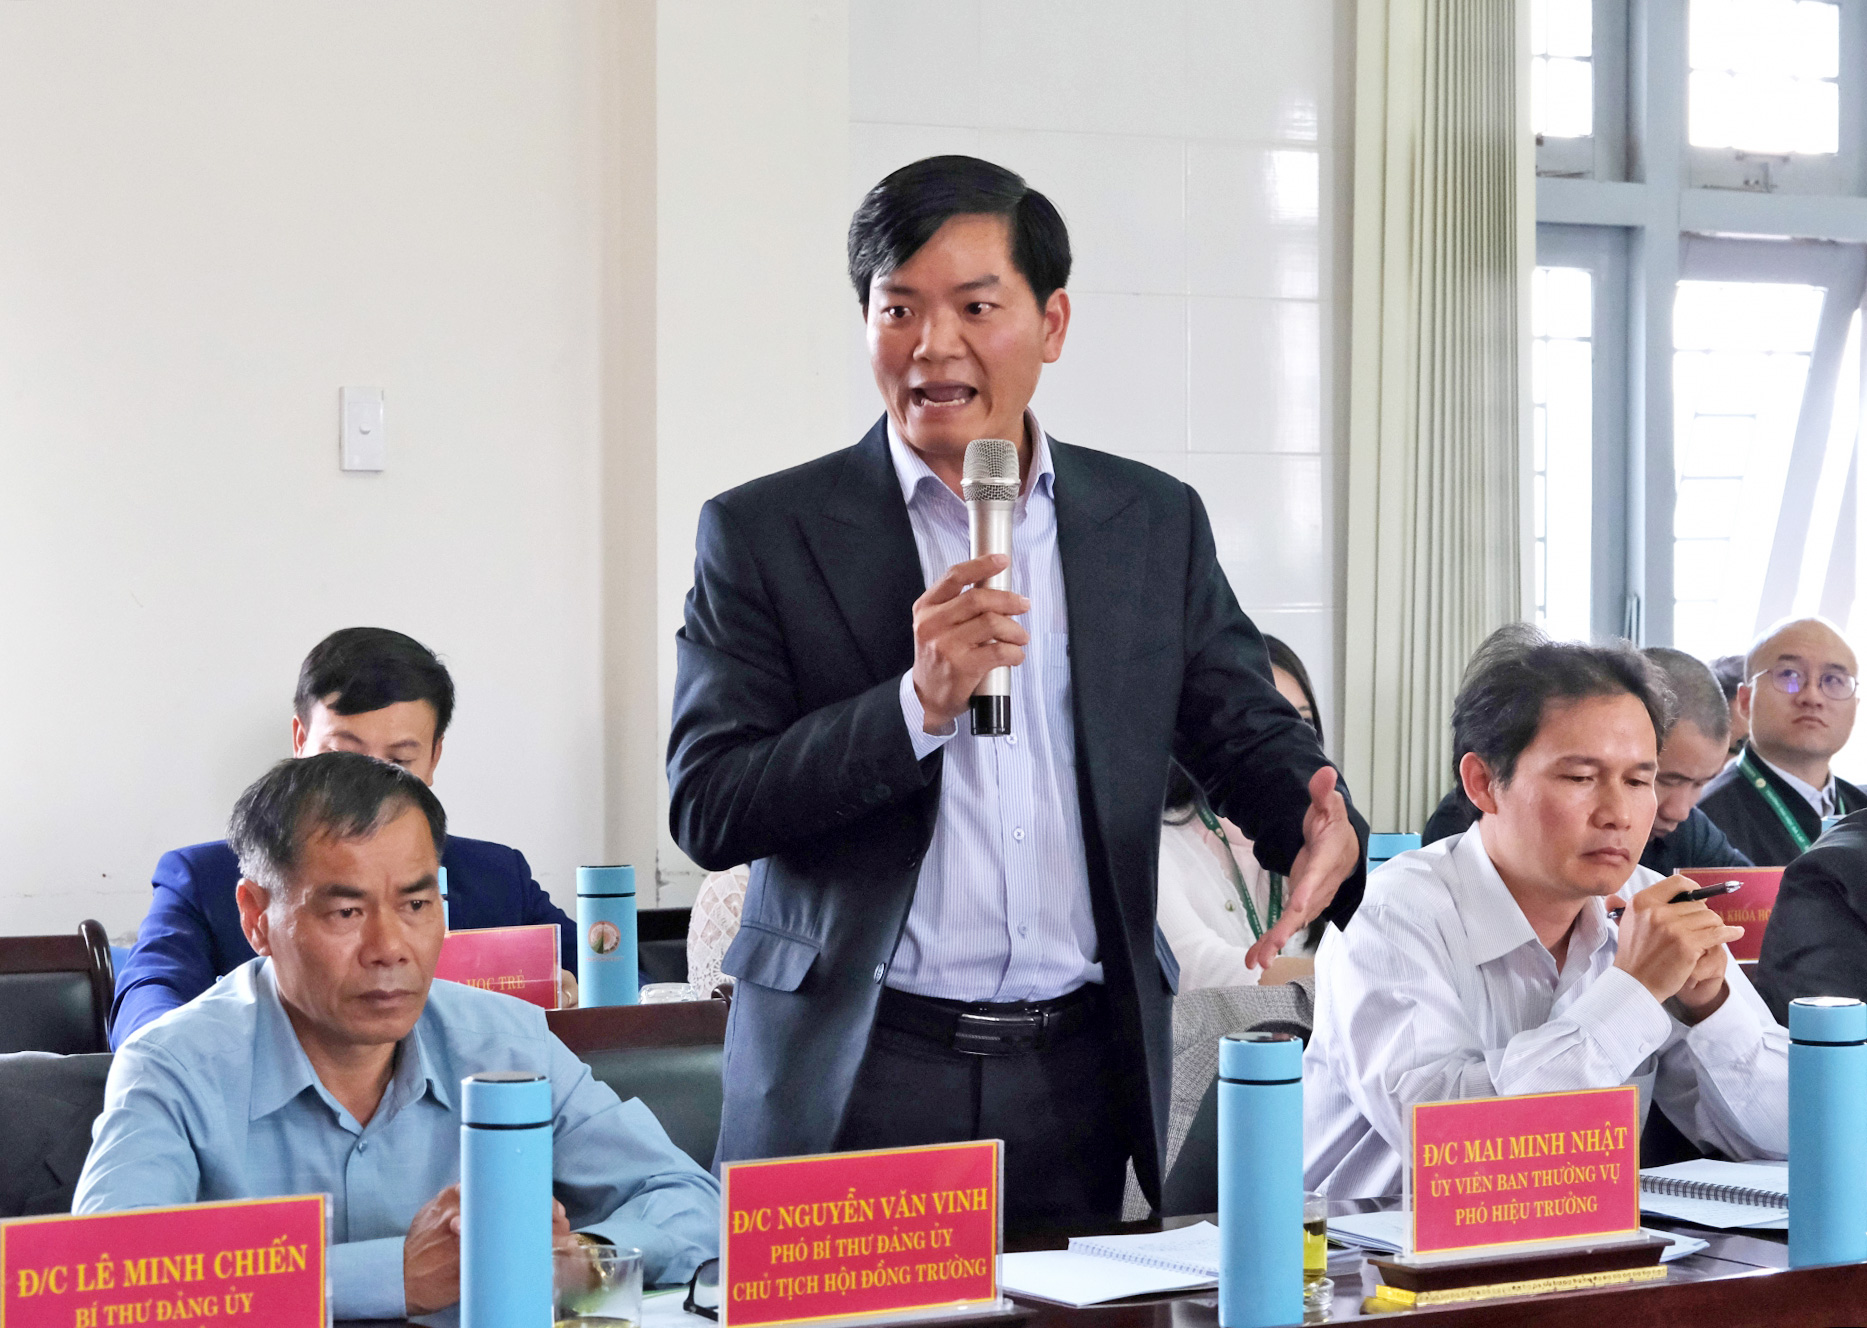 Phó Hiệu trưởng Trường Đại học Đà Lạt Mai Minh Nhật trình bày các ngành học mà nhà trường đang đẩy mạnh đào tạo để đáp ứng nhu cầu của xã hội